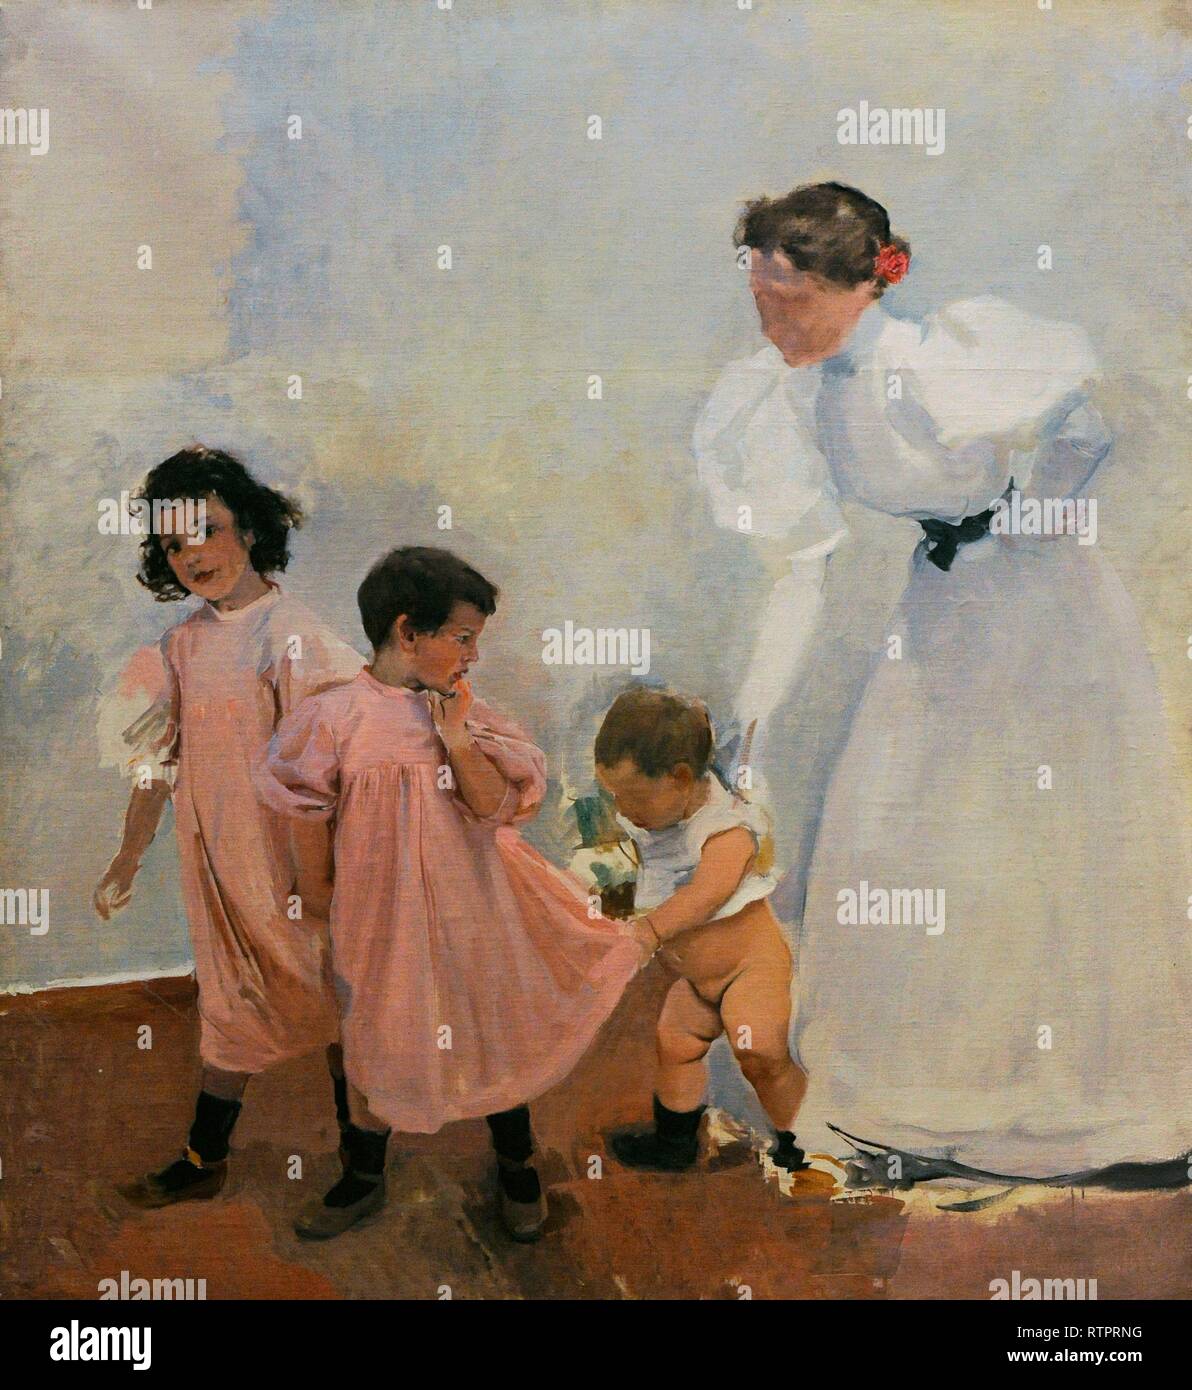 Joaquín Sorolla y Bastida (1863-1923). Pintor español. Mi mujer y mis  hijos, 1897-1898. Cuadro inacabado. Lienzo, 160 x 150 cm. Museo Sorolla.  Madrid. España Stock Photo - Alamy